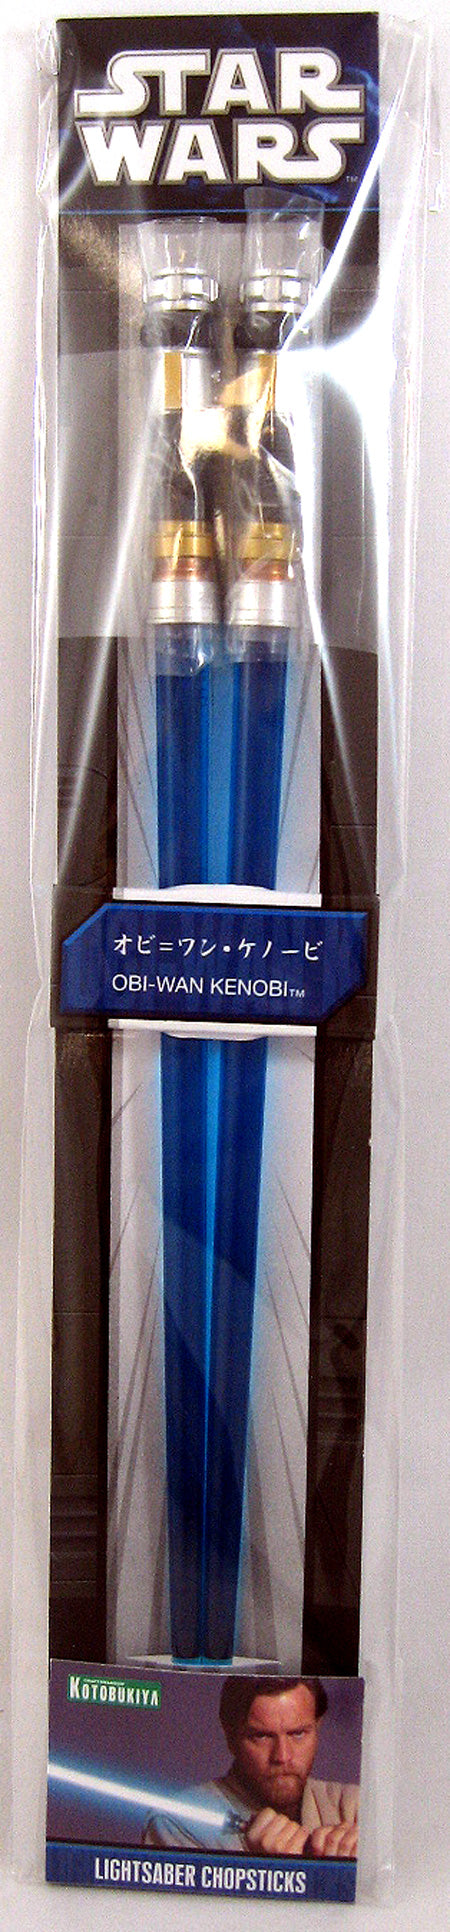 Star Wars 9 Inch Chopsticks - Obi-Wan Kenobi Lightsaber Blue Chopstick